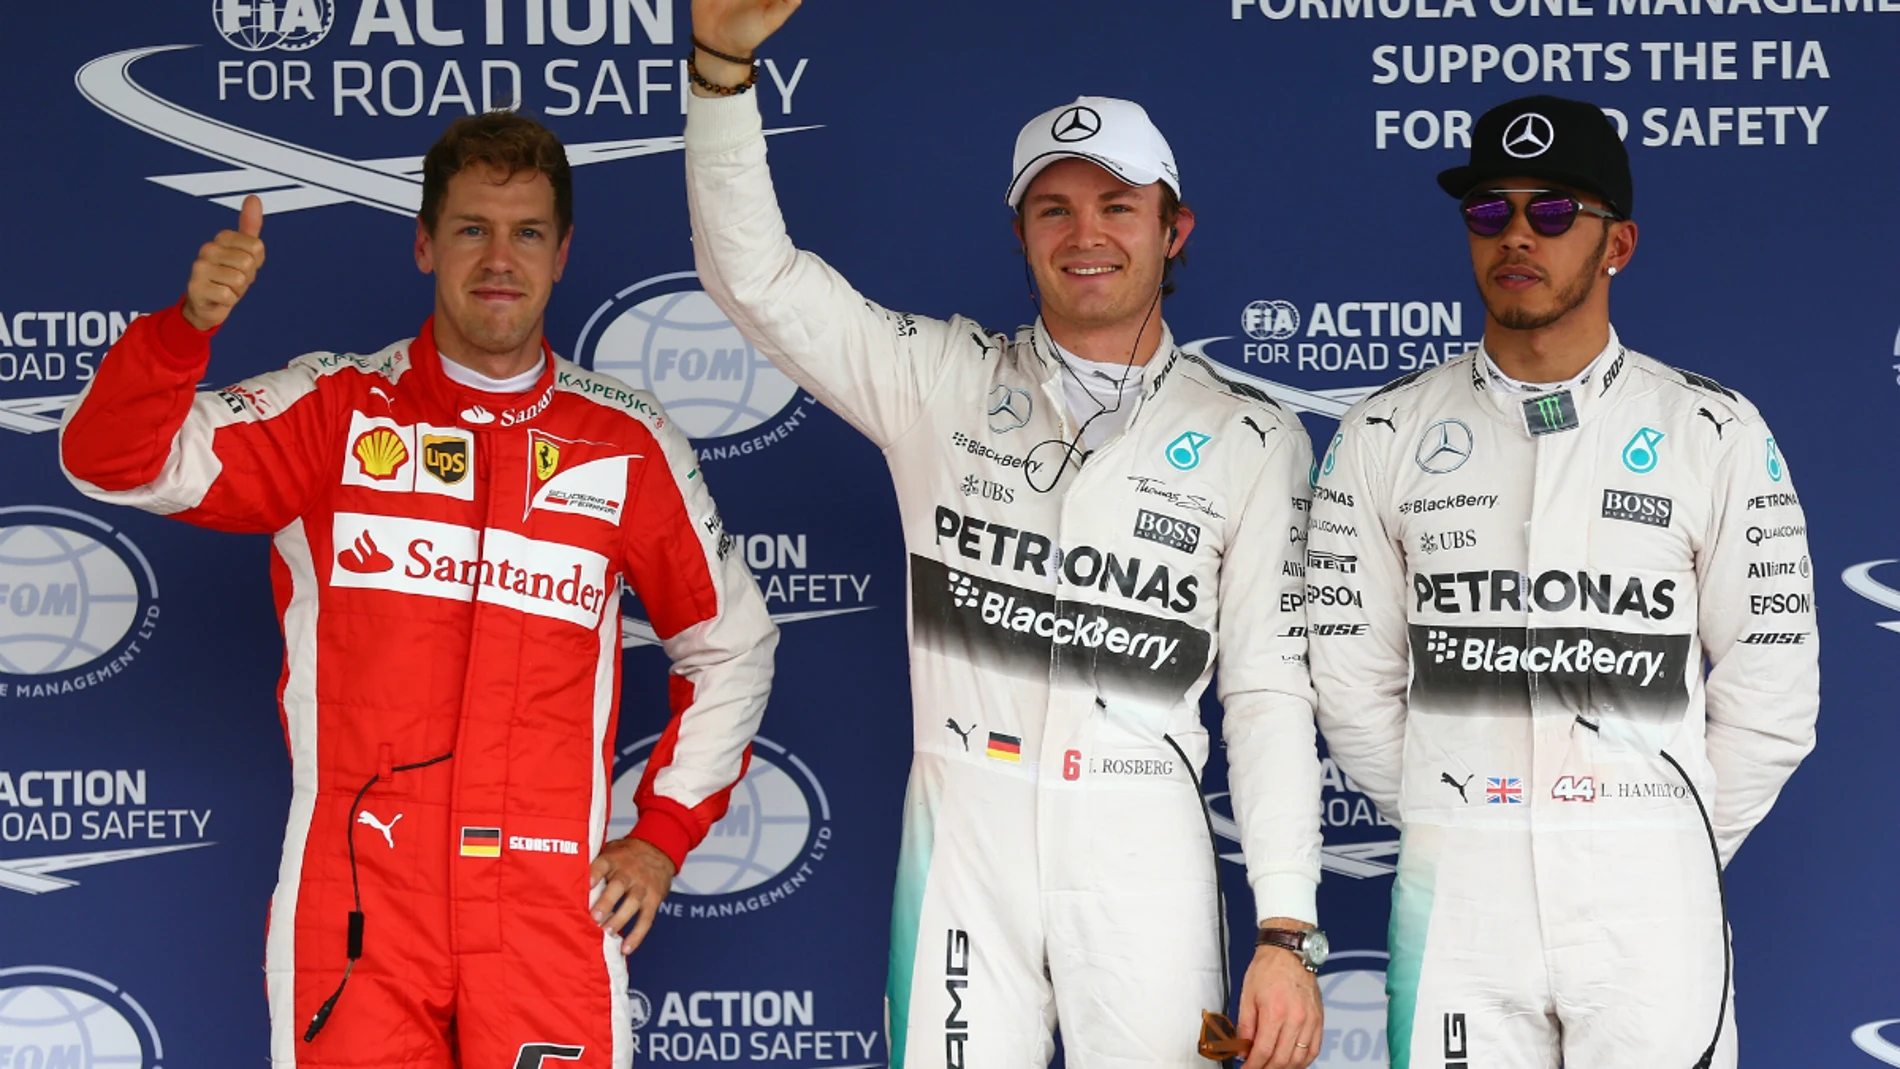 Vettel, Rosberg y Hamilton, los más rápidos de la Q3